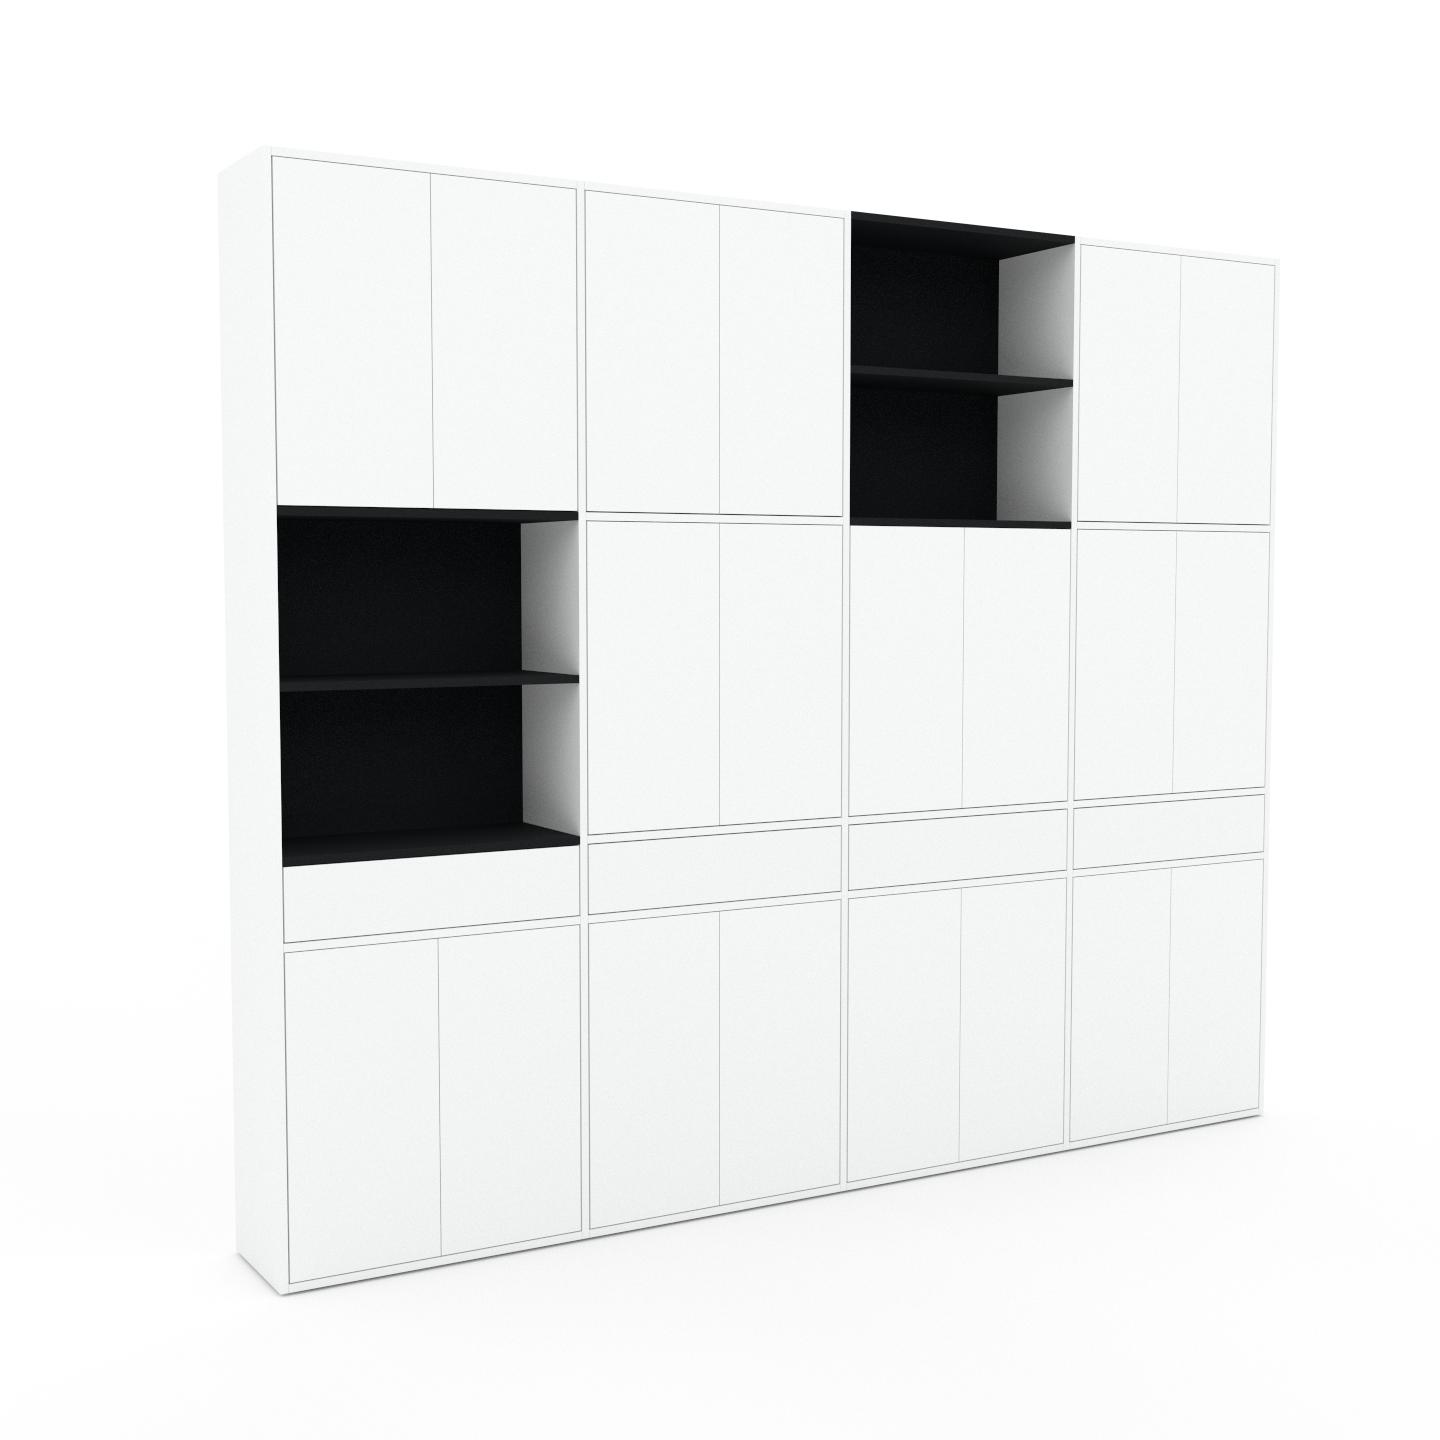 MYCS Schrankwand Weiß - Moderne Wohnwand: Schubladen in Weiß & Türen in Weiß - Hochwertige Materialien - 301 x 253 x 35 cm, Konfigurator